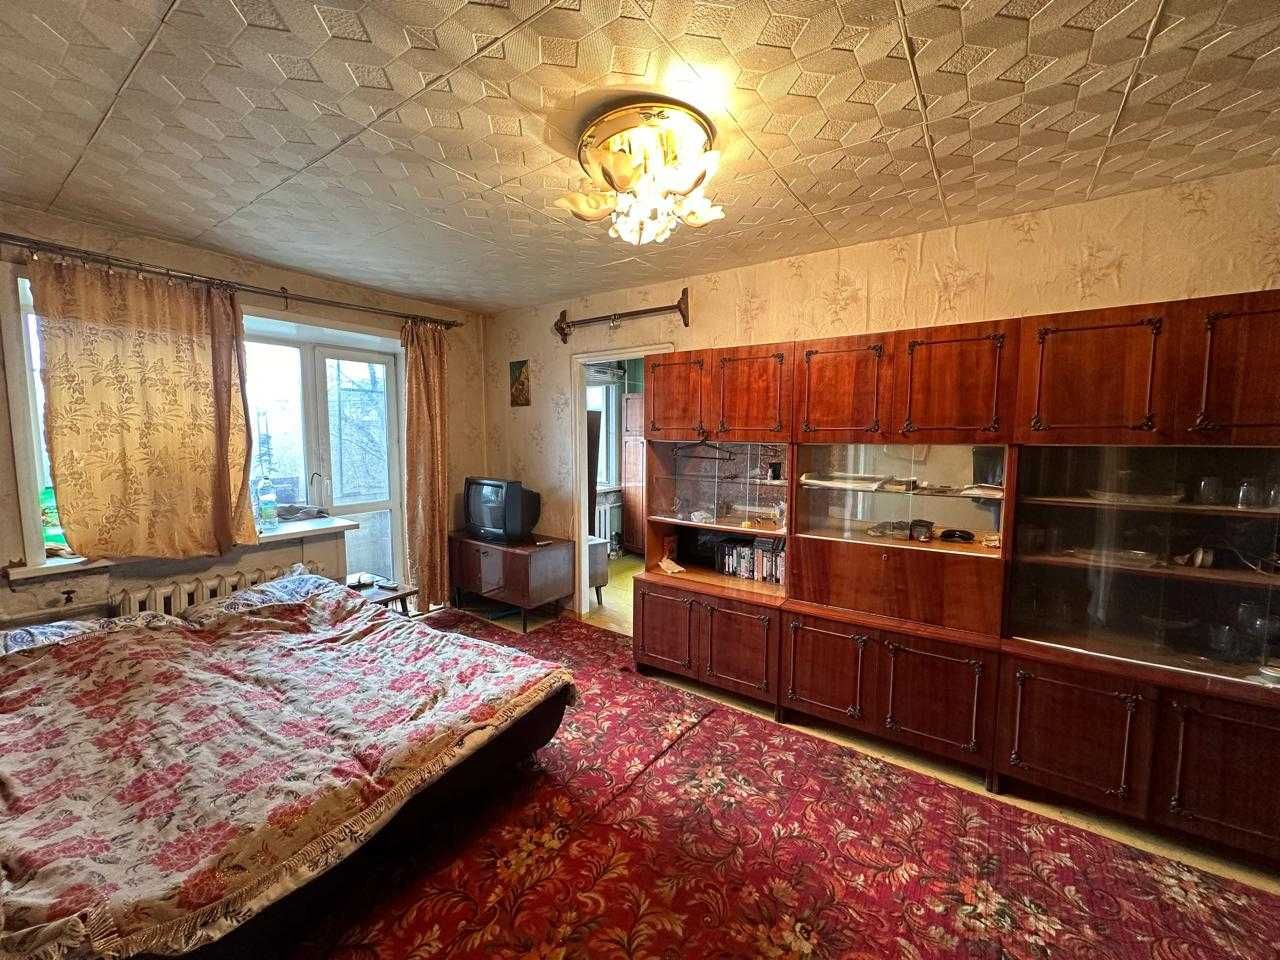 Продаю 2-комнатную по улице Зелинского, 4 этаж, не угловая!